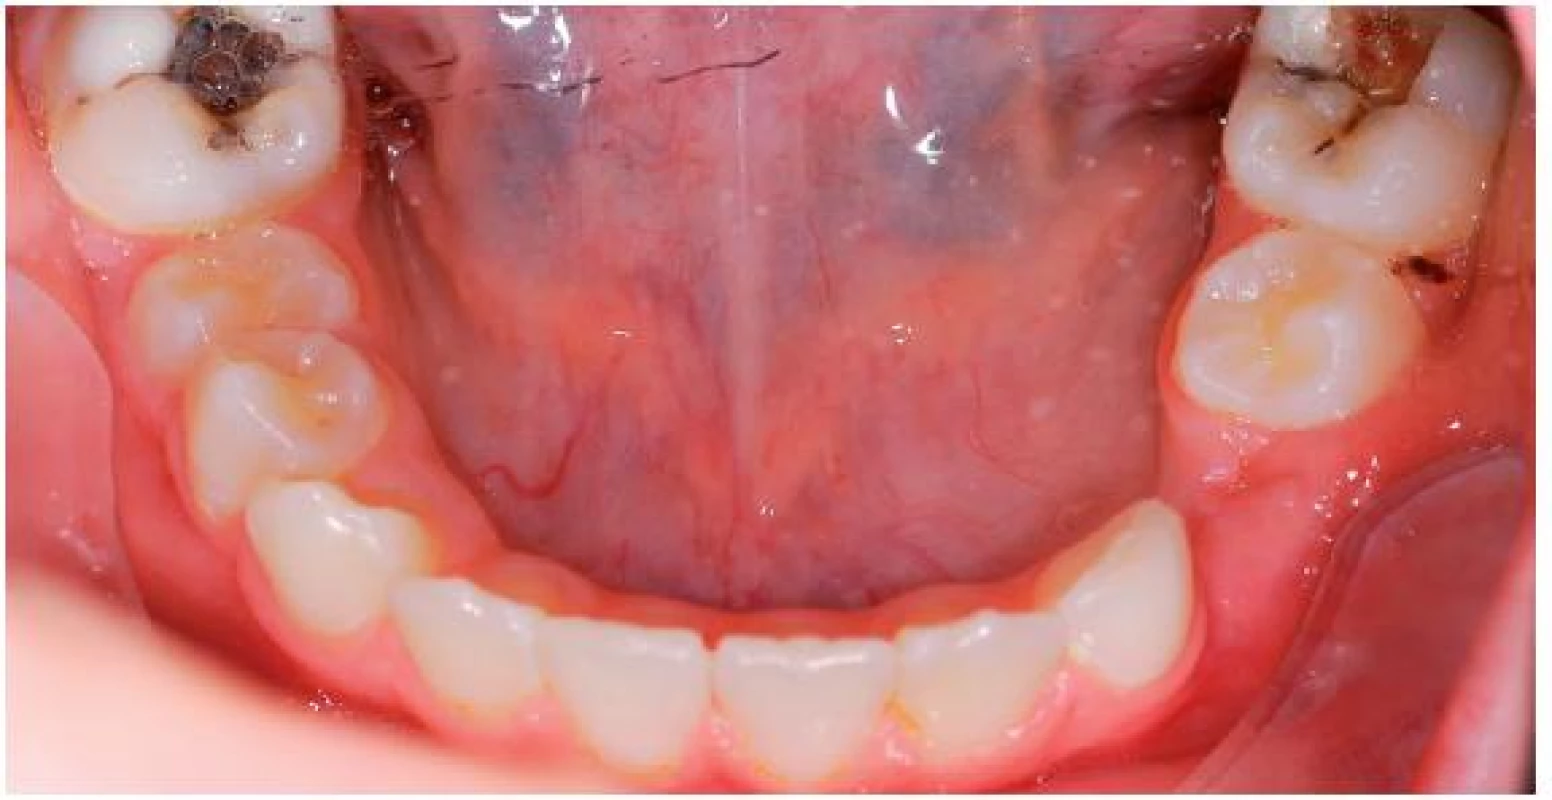 Dolní zubní oblouk před extrakcí kazem destruovaných zubů 36 a 46, perzistence 73, atypický průběh erupce v levém dolním postranním úseku chrupu